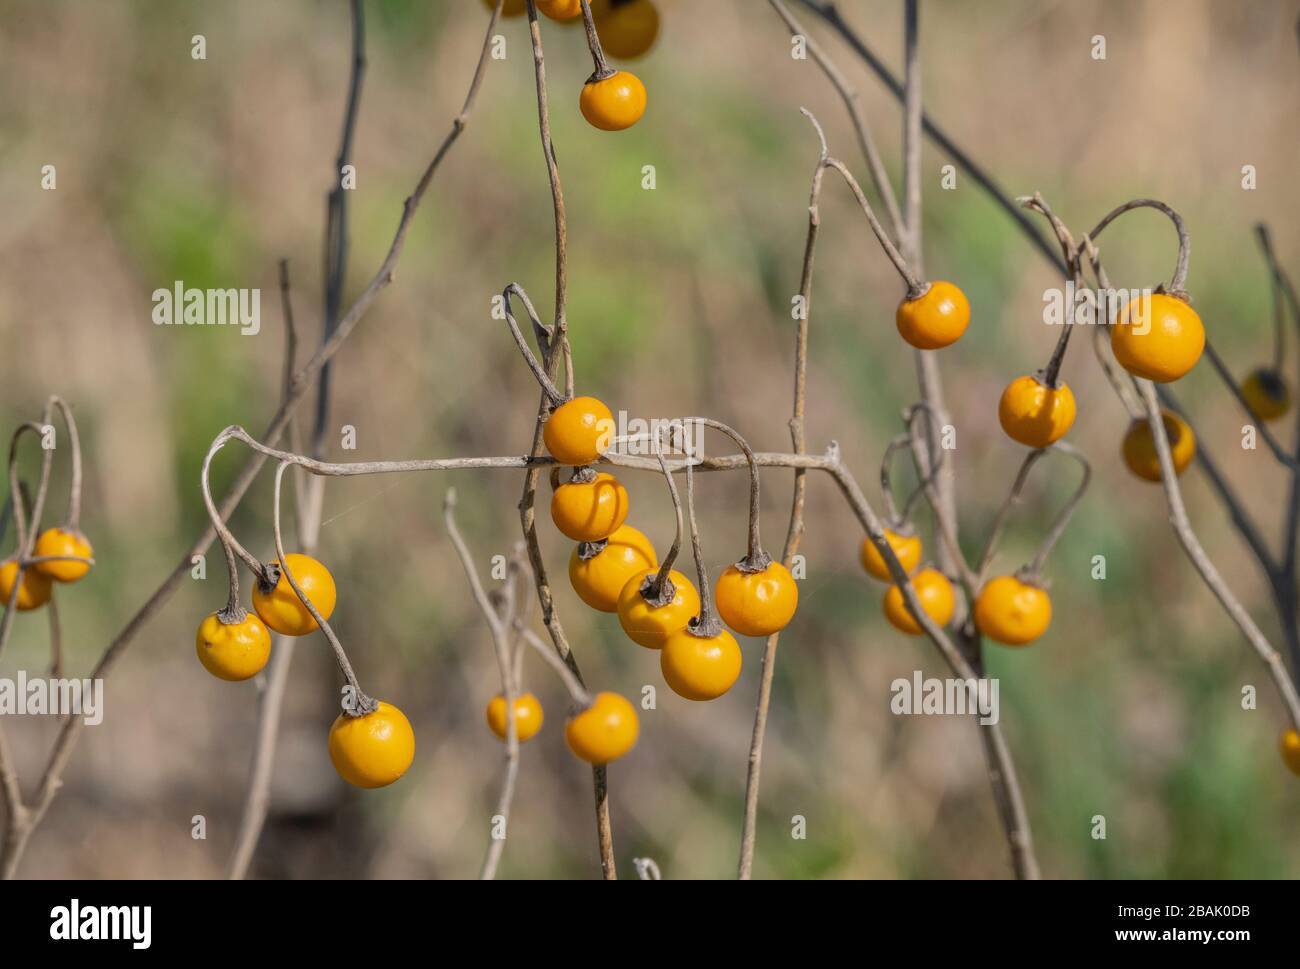 Yellow berries of Hairy nightshade, Solanum villosum, in winter, Greece. Stock Photo